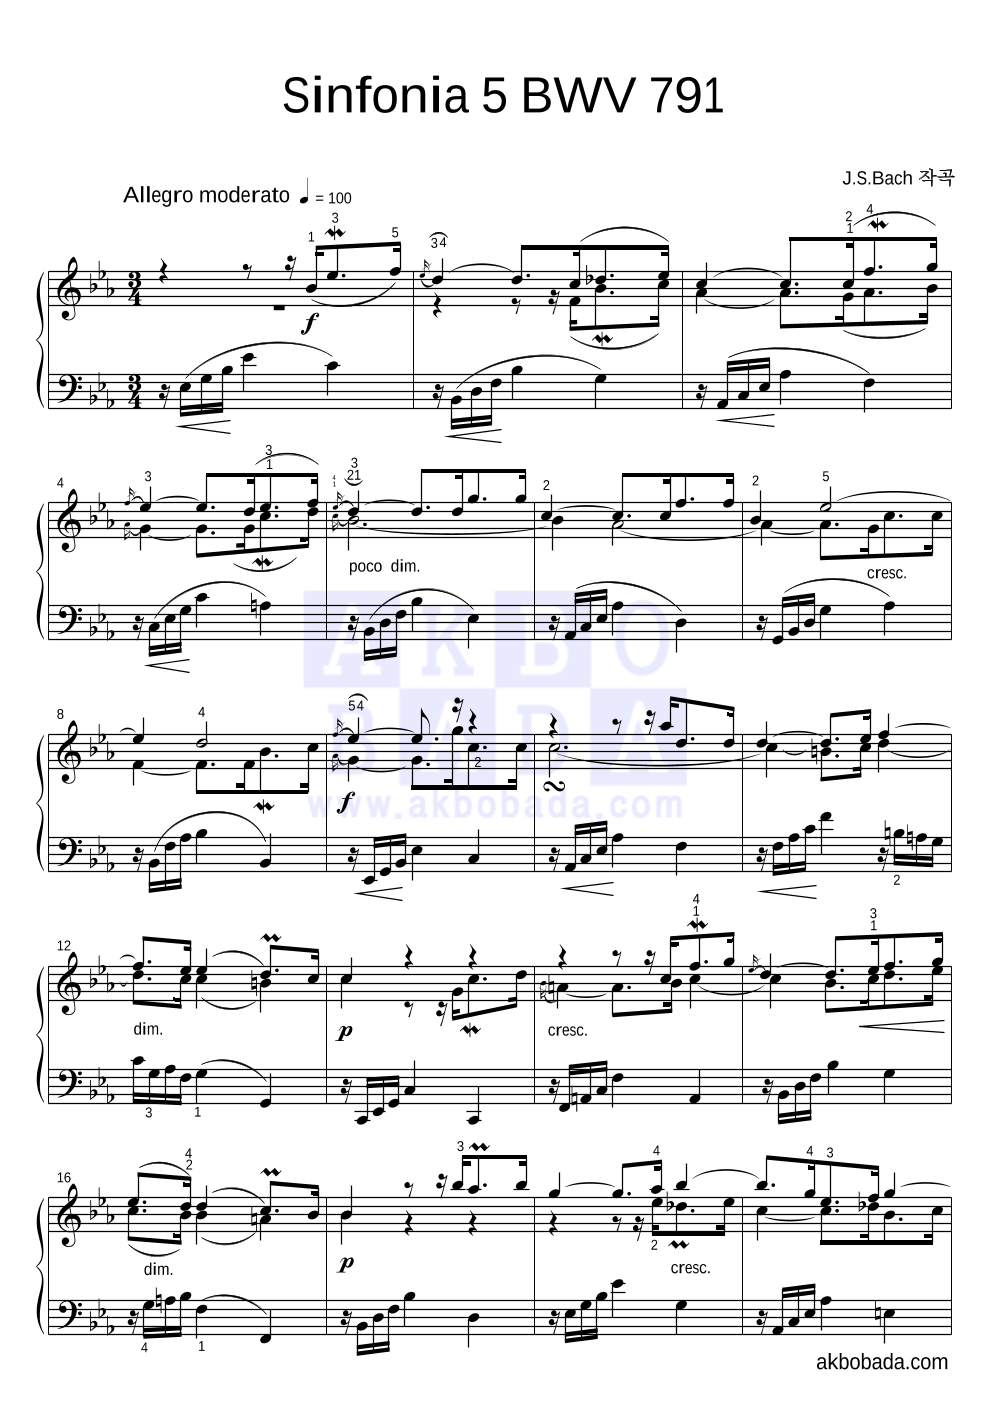 바흐 - Sinfonia 5 BWV 791 피아노 2단 악보 